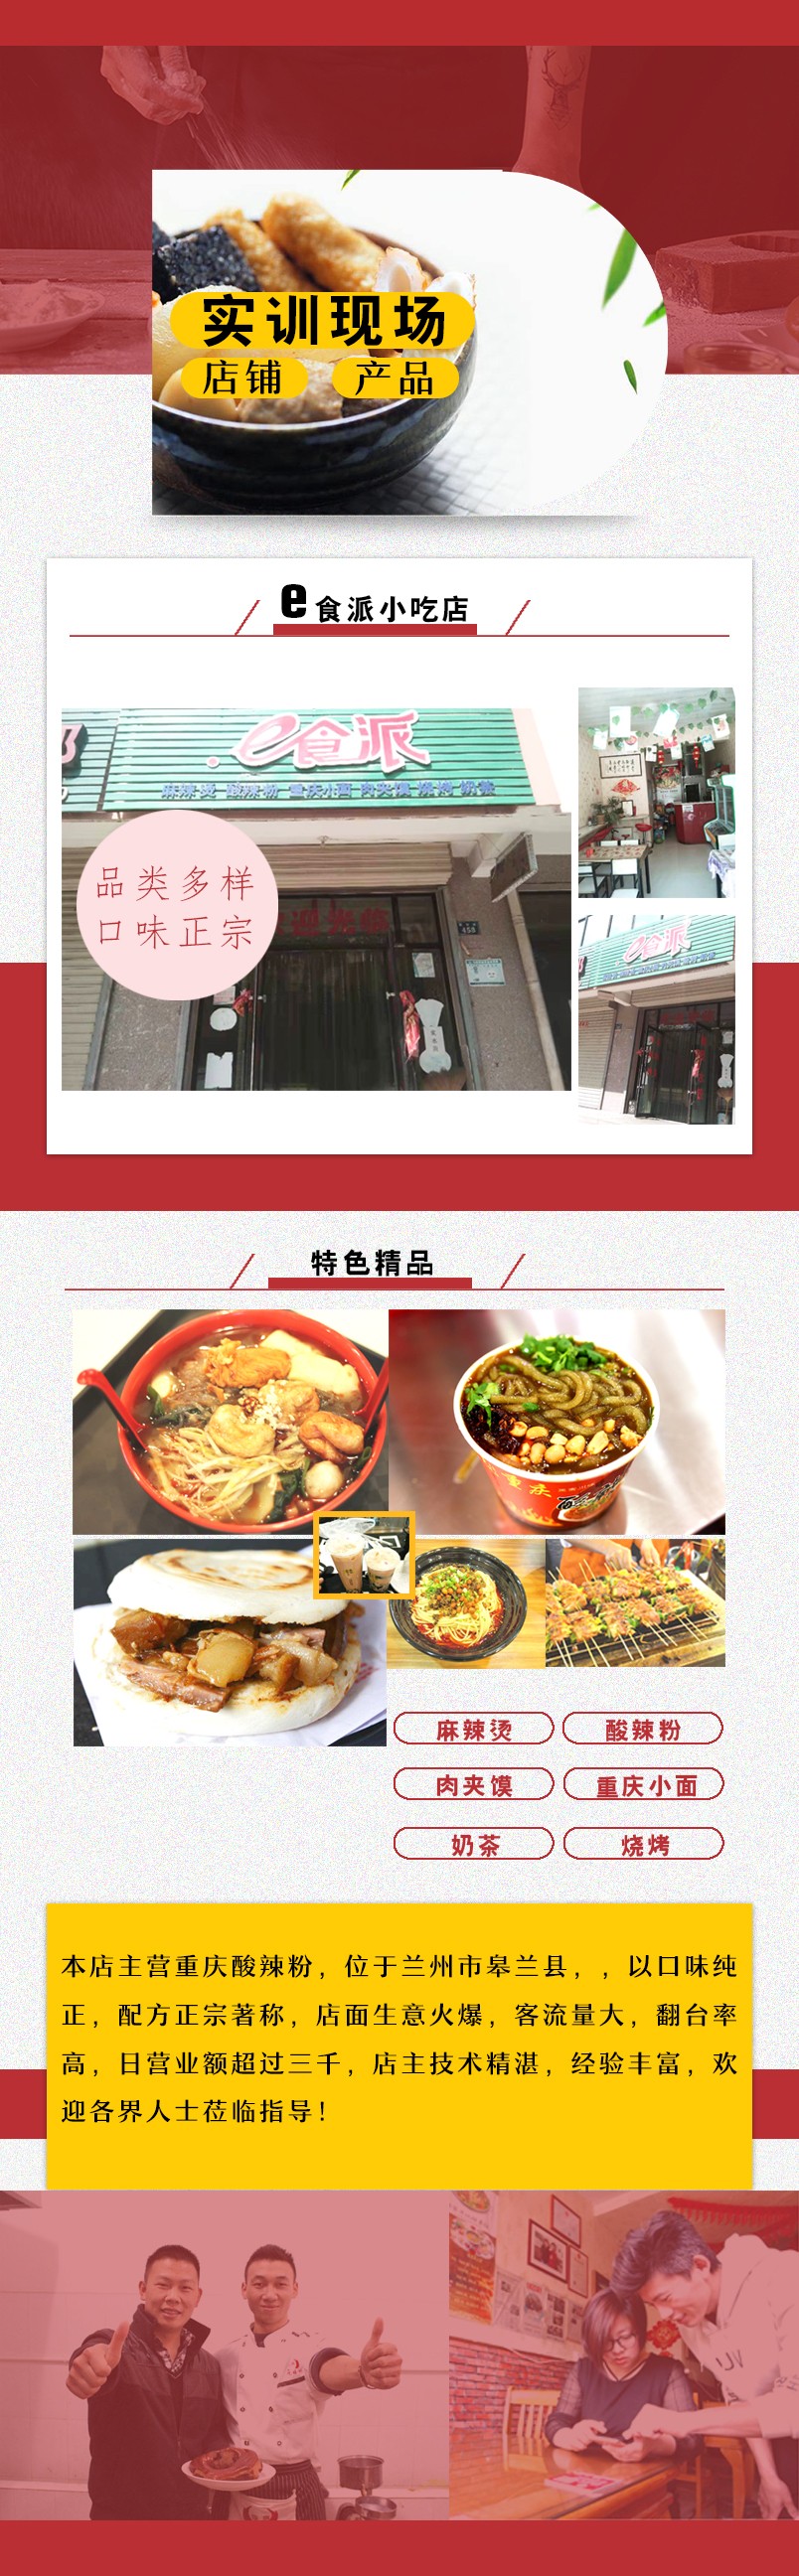 食训联盟网站产品说明e食派小吃店.jpg